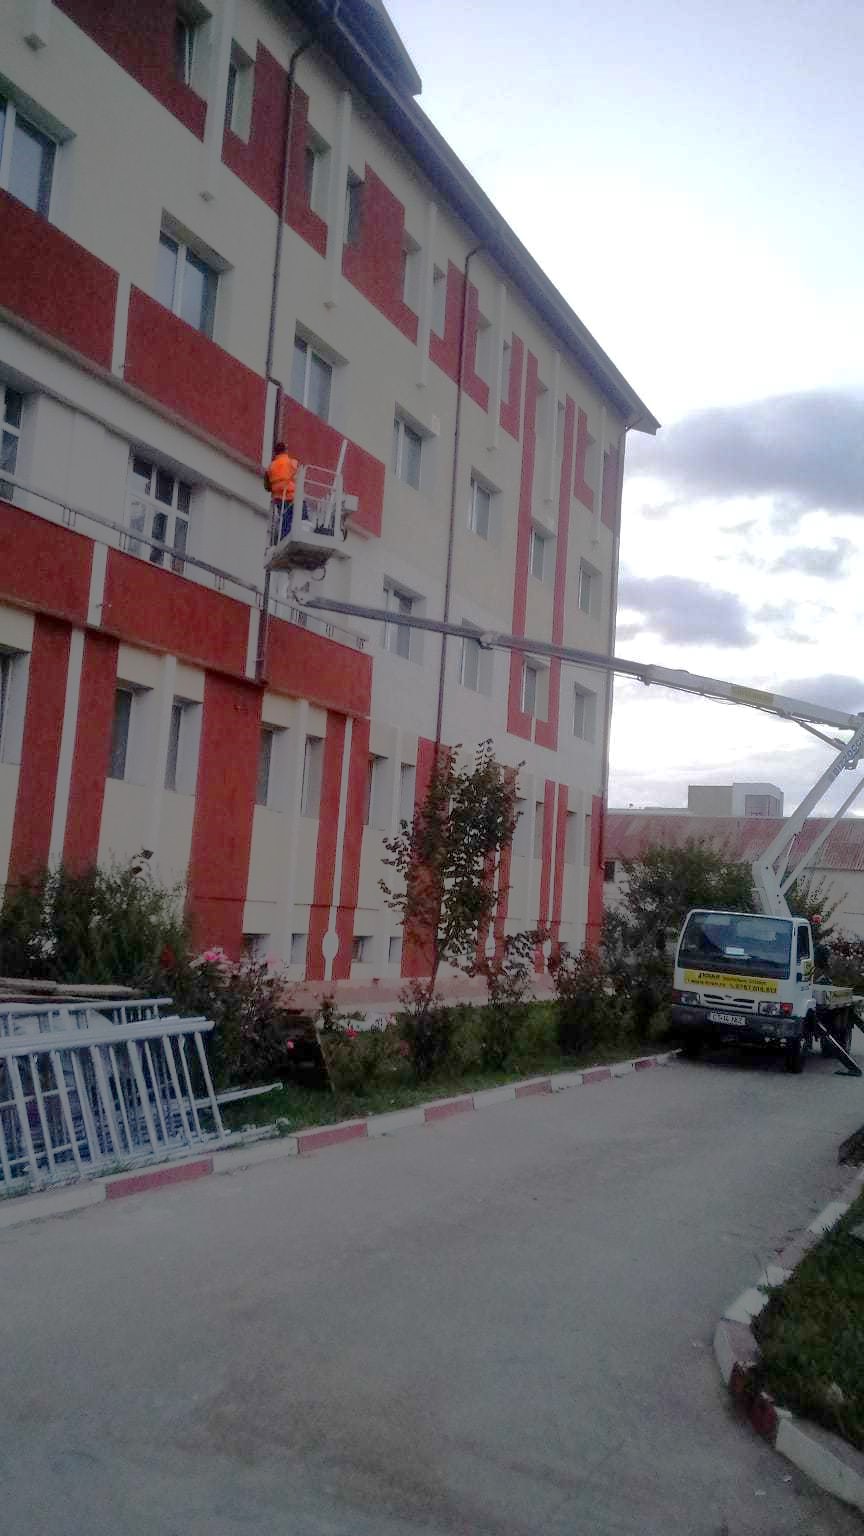 Închiriere platformă aerienă pentru montare banner și lucrări de întreținere a hotelului